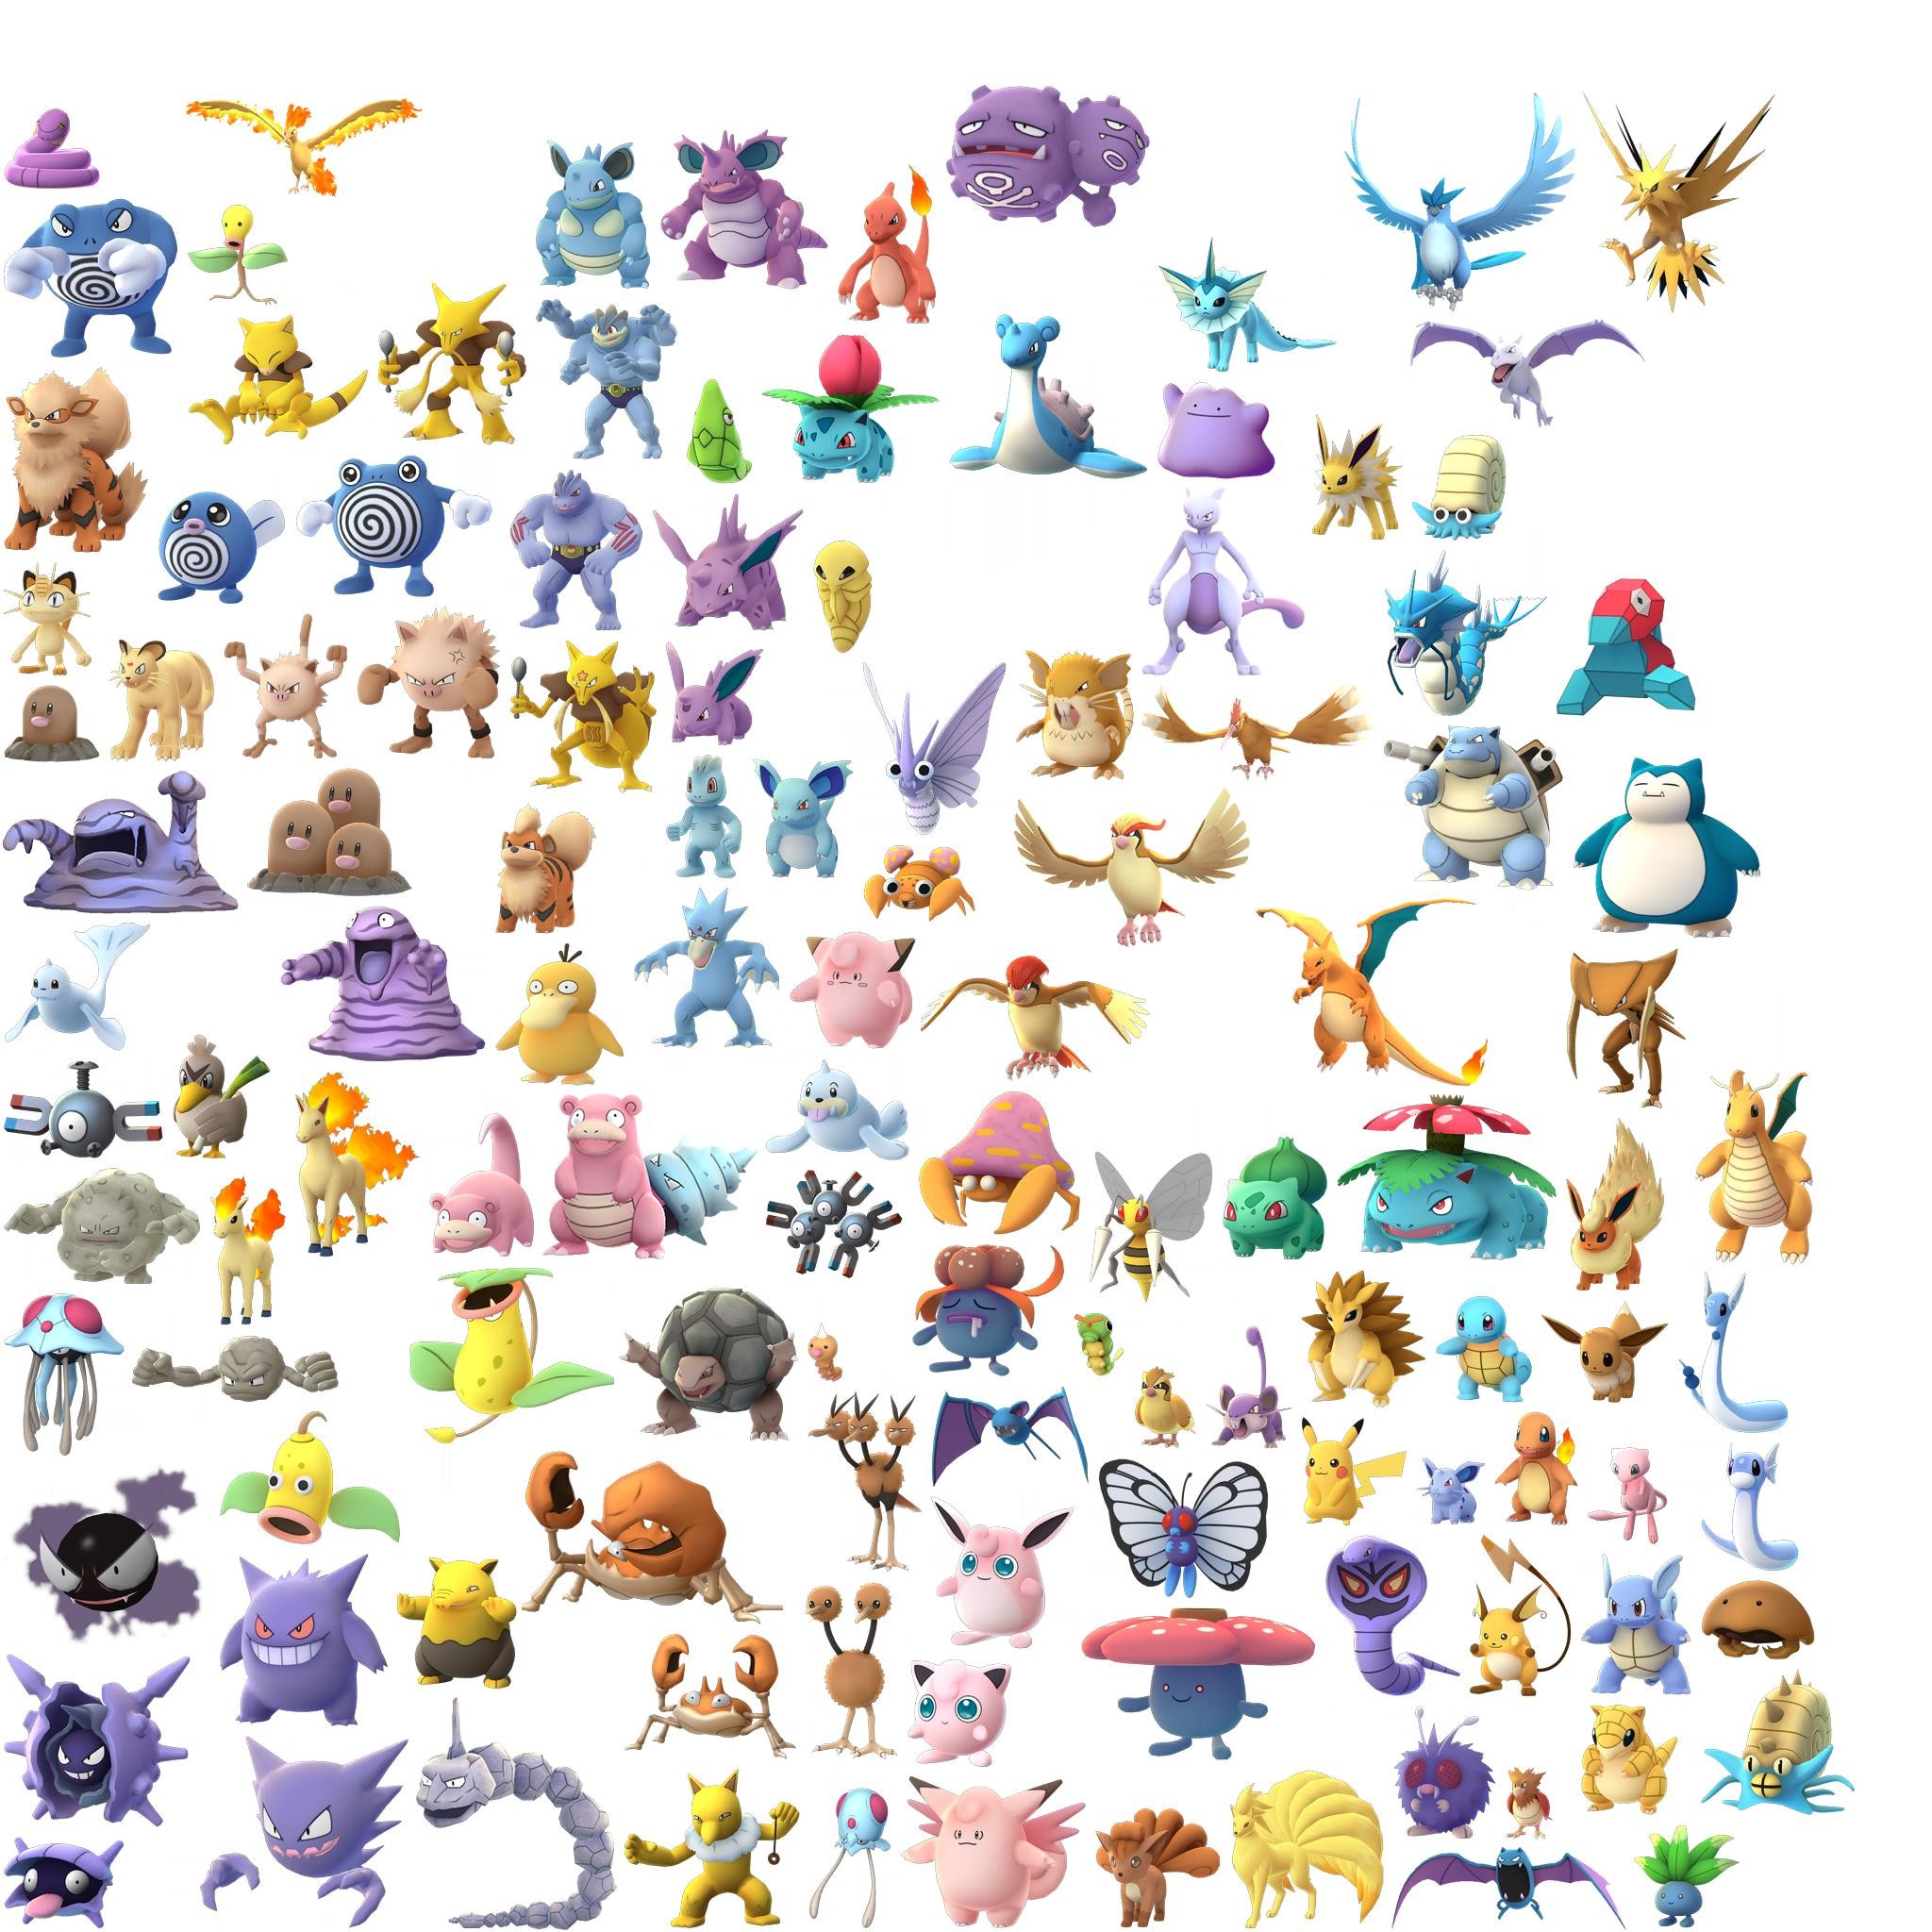 2048x2048 Pokemon | Live HD Pokemon Wallpapers, Photos